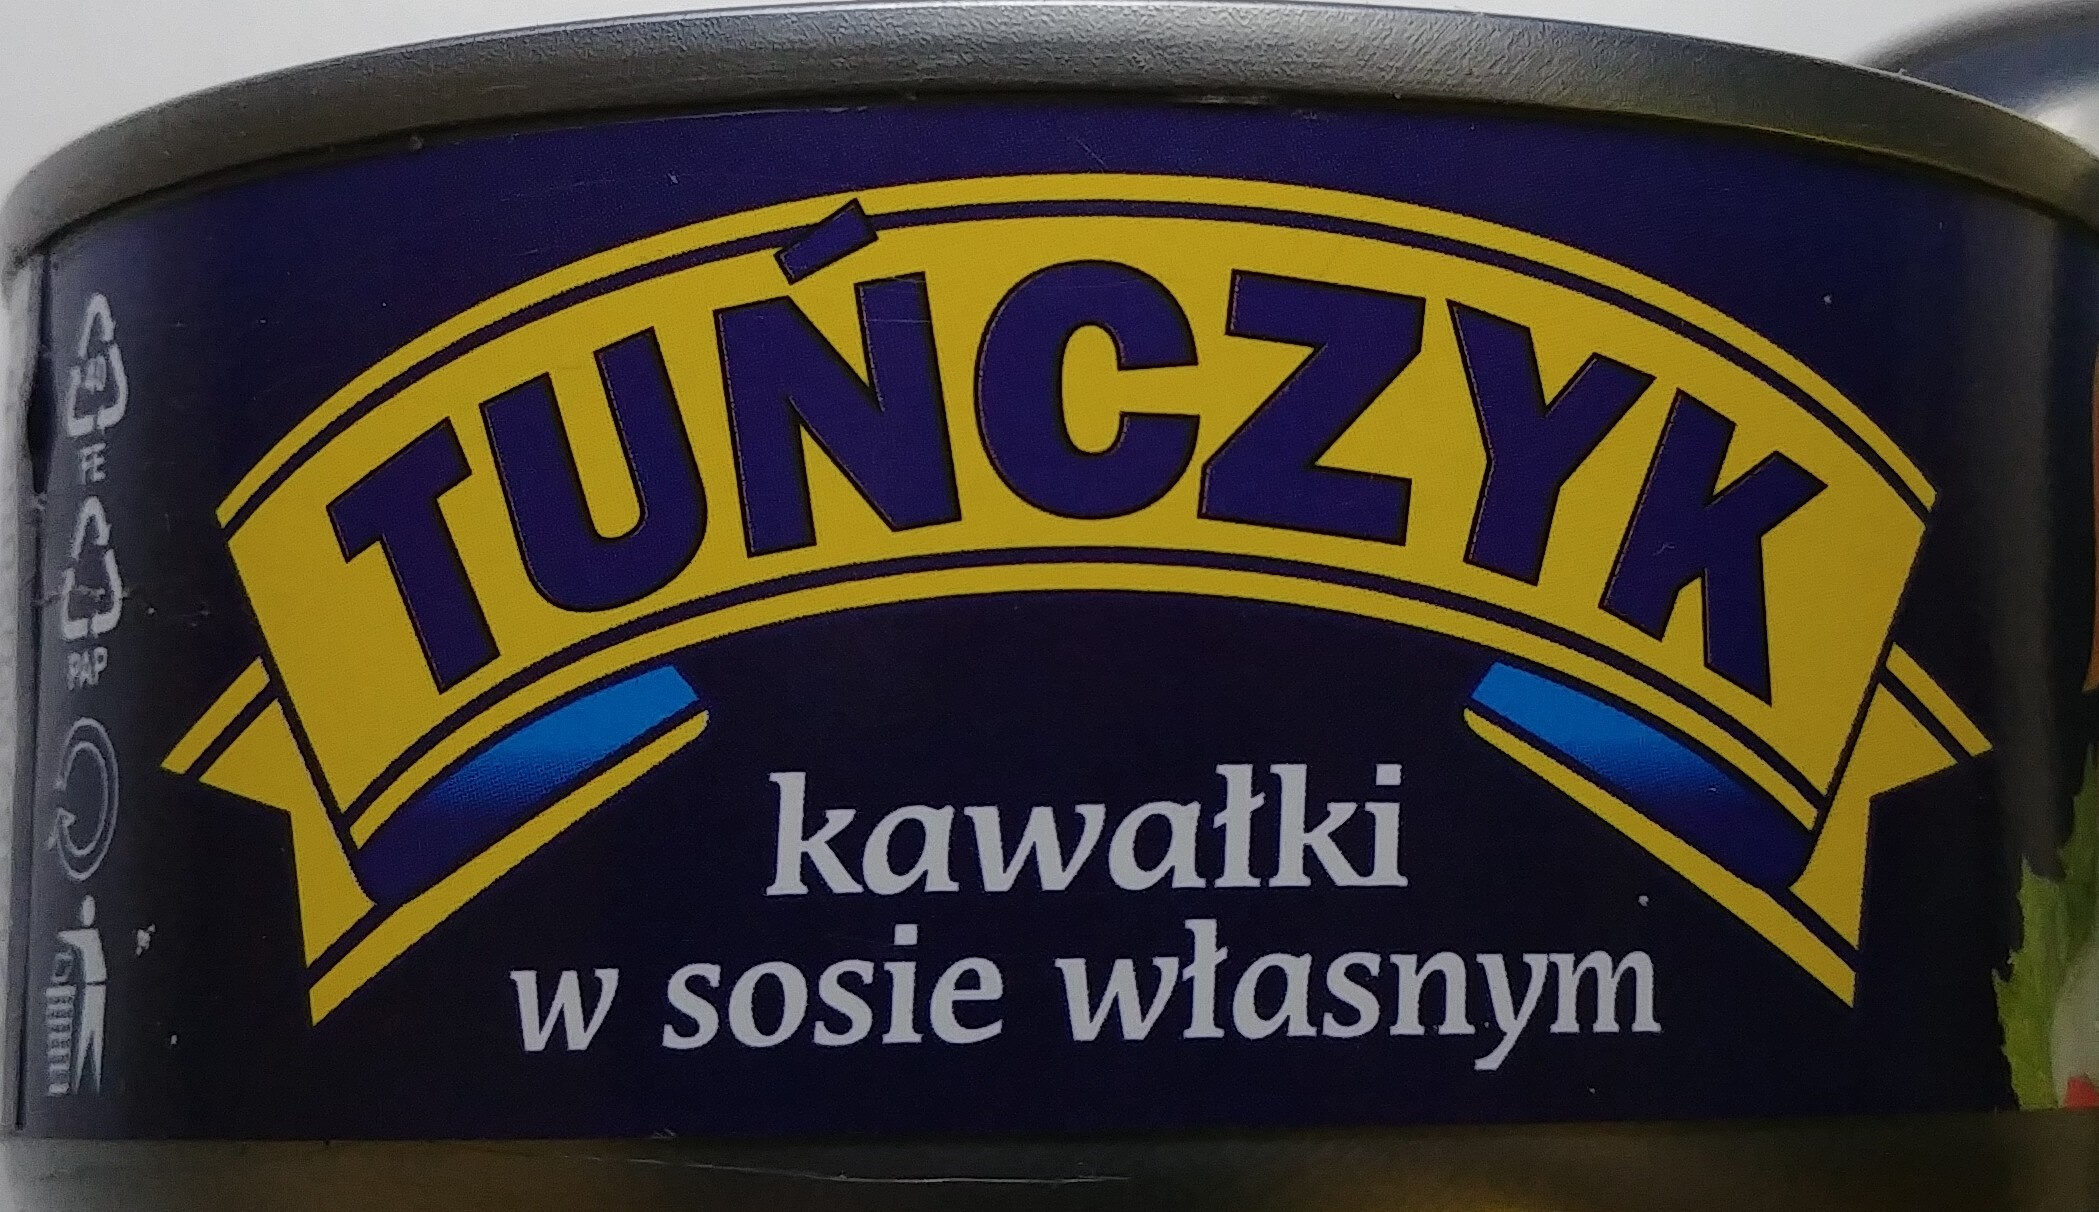 Tuńczyk kawałki w sosie własnym. - Producto - pl